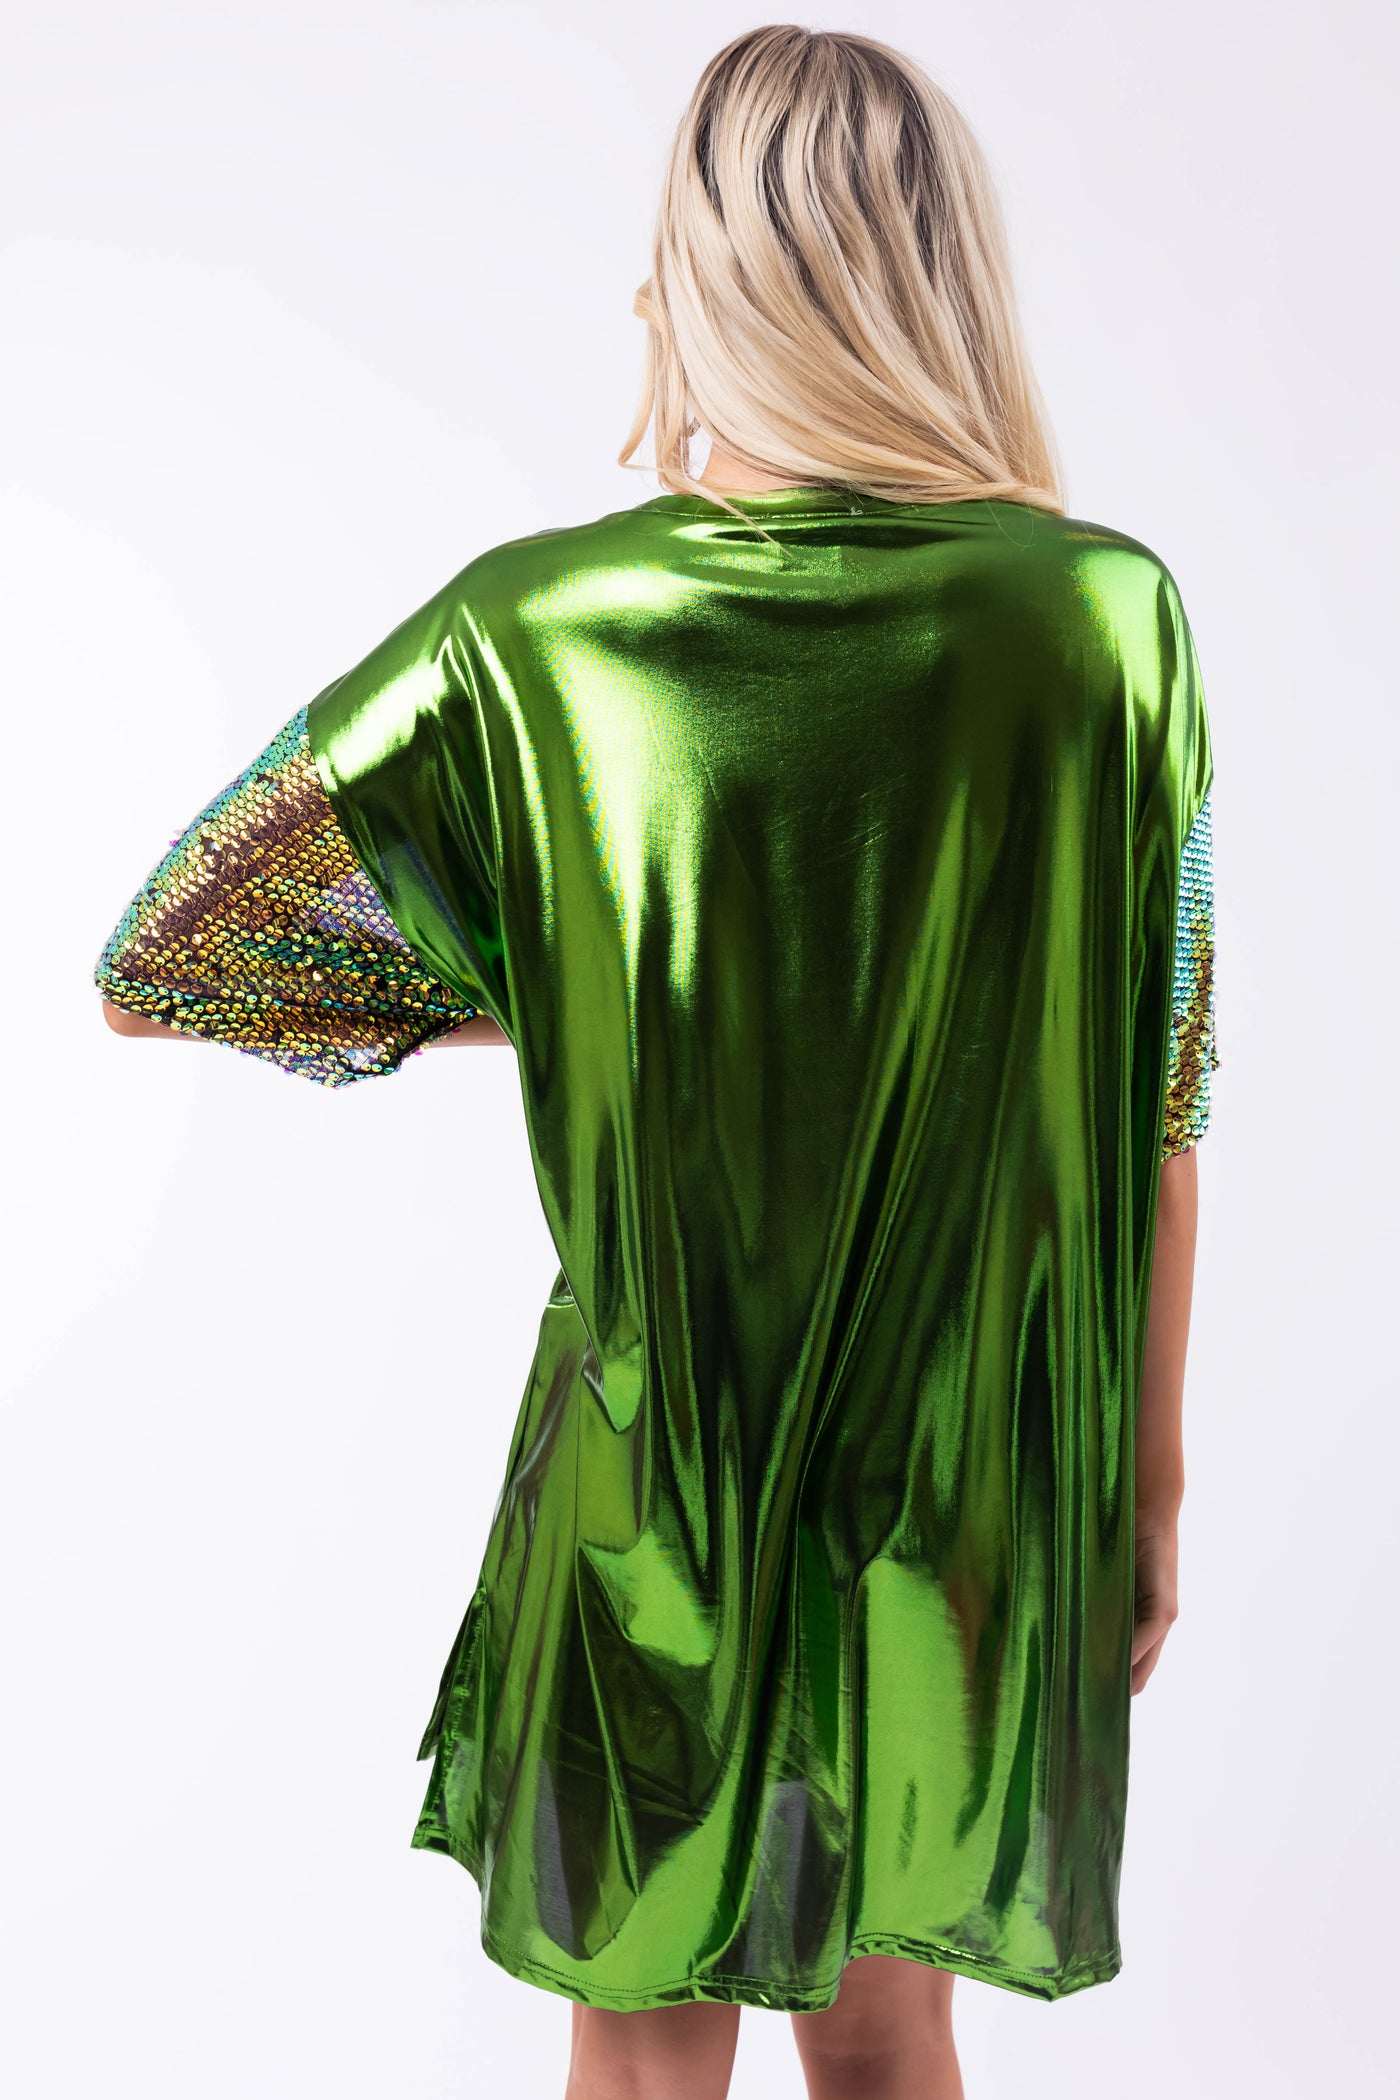 Metallic Shamrock Clover Sequin Tee Shirt Dress